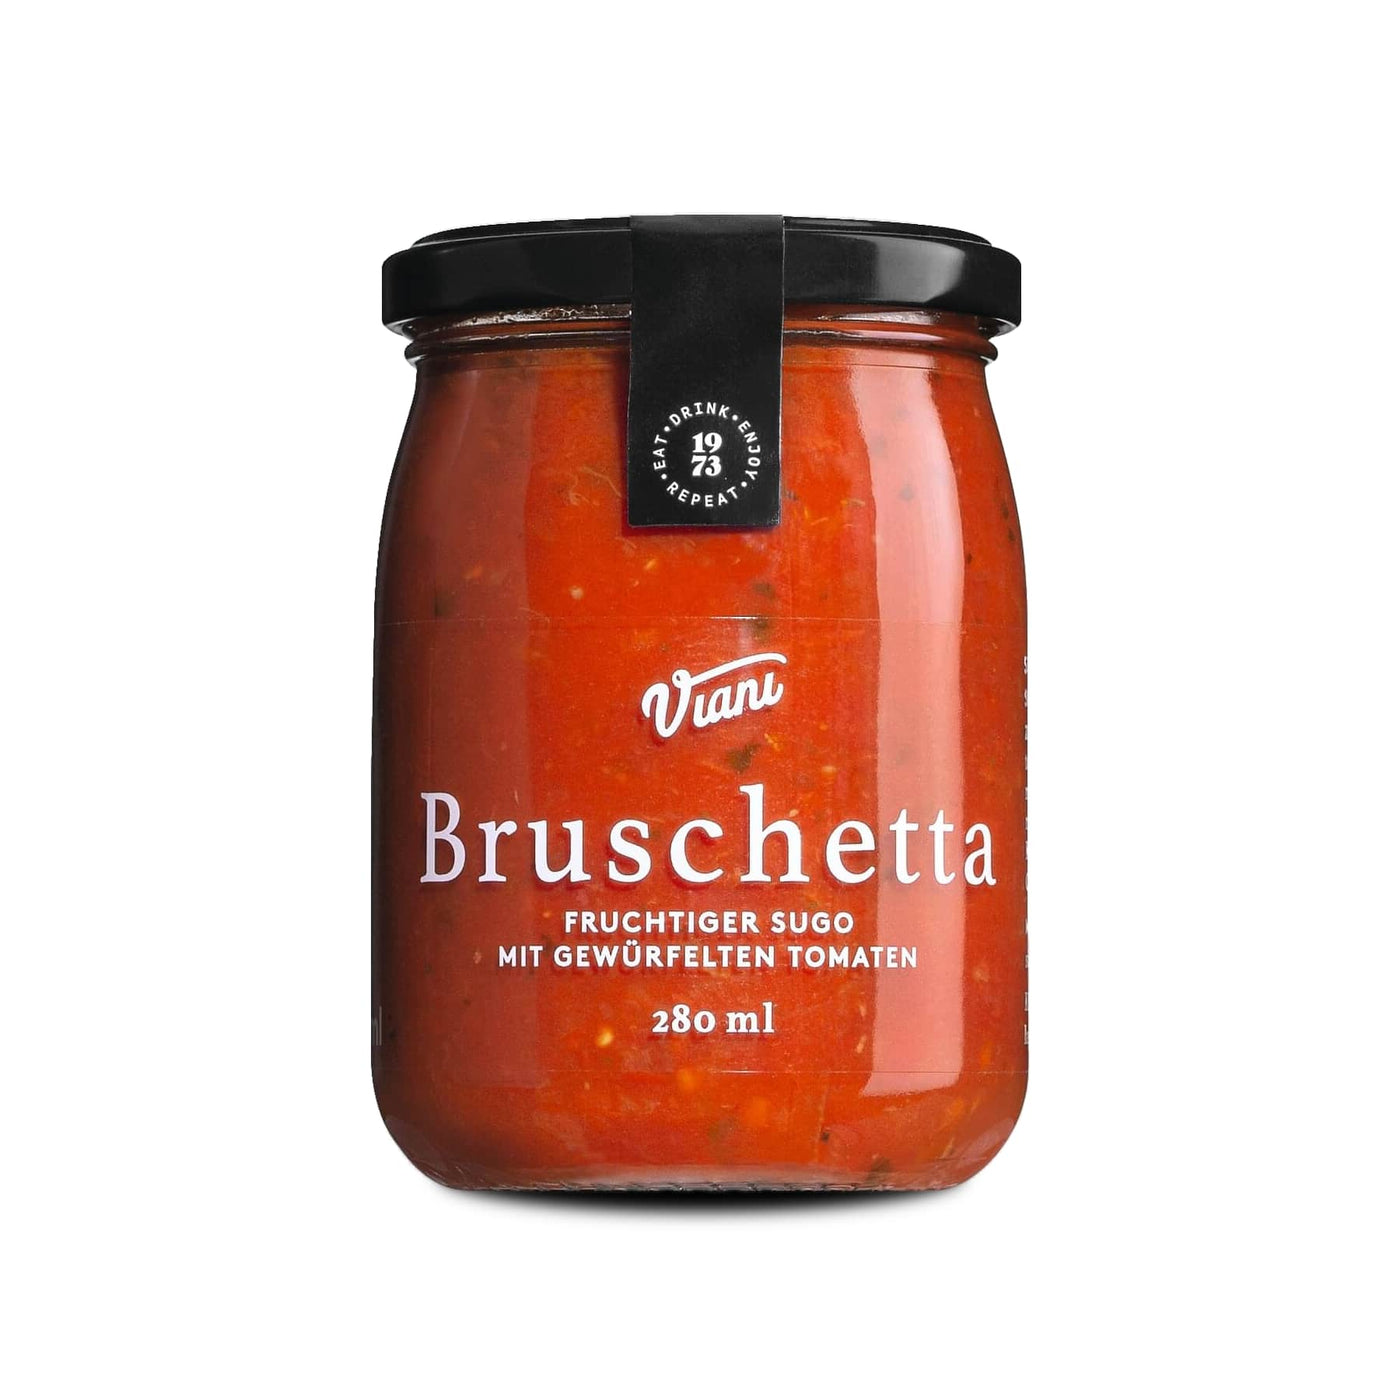 Bruschetta - Sugo mit gewürfelten Tomaten 280ml